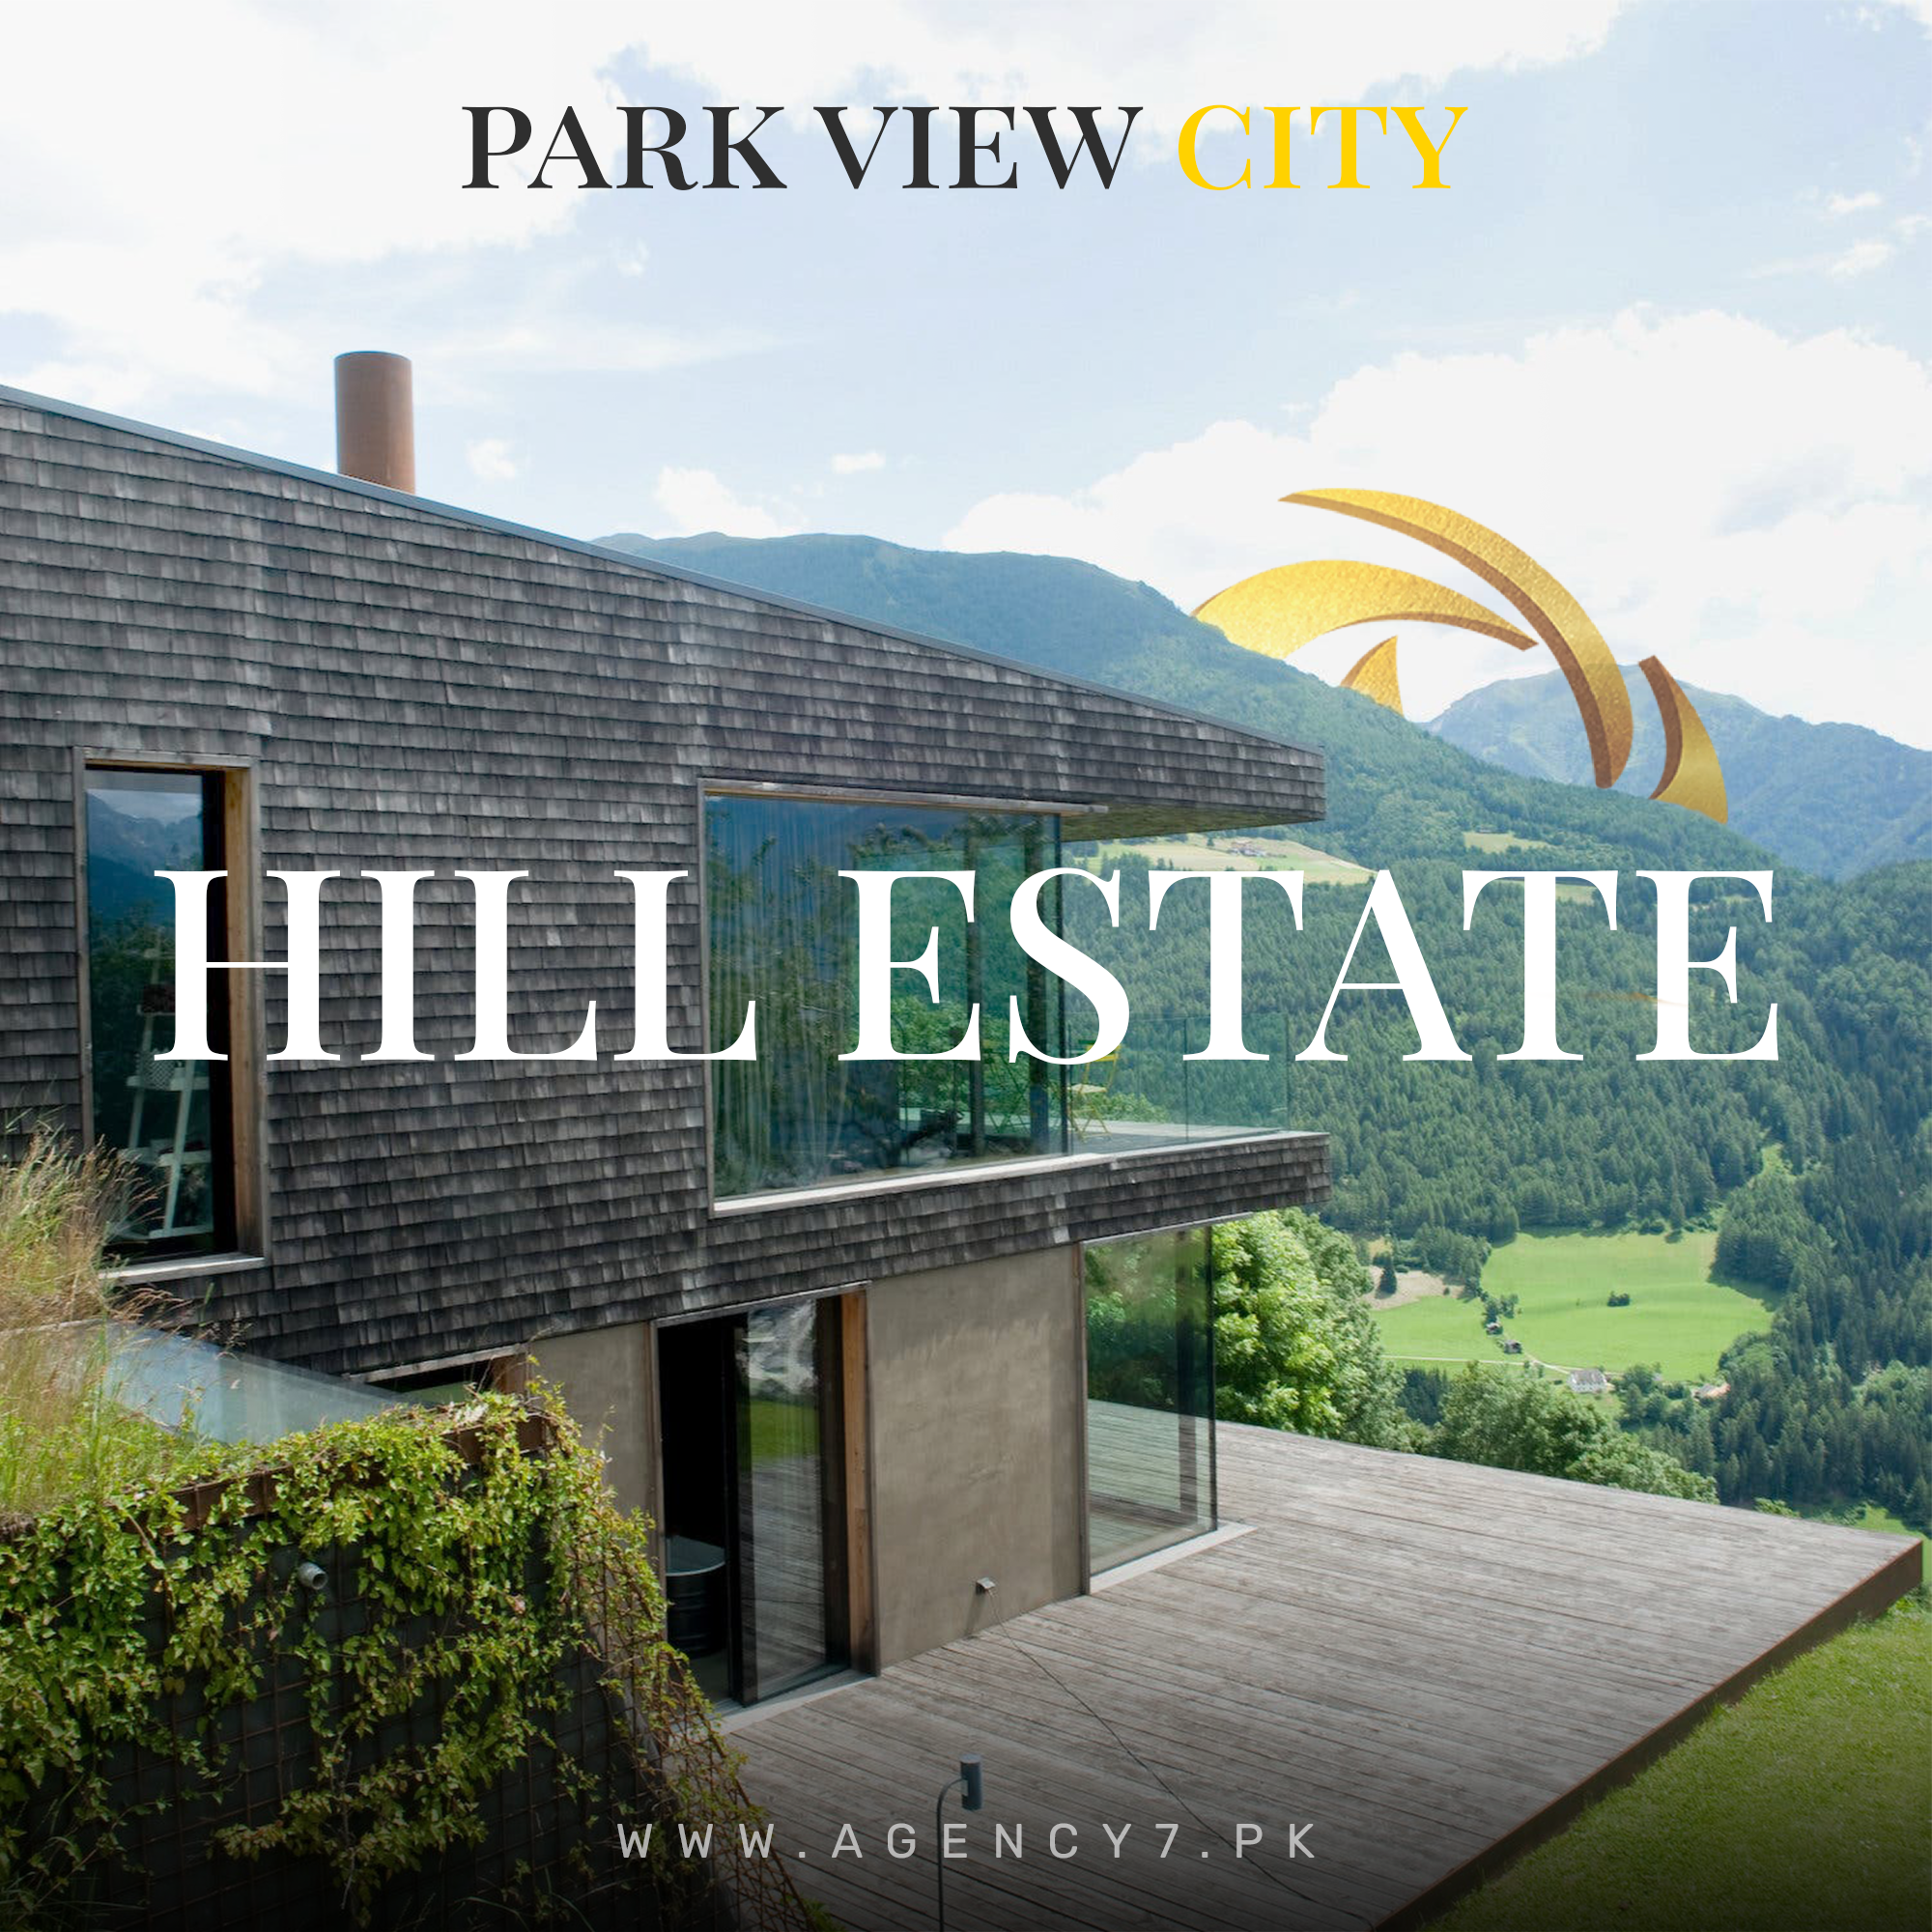 Park View City Hills Estate